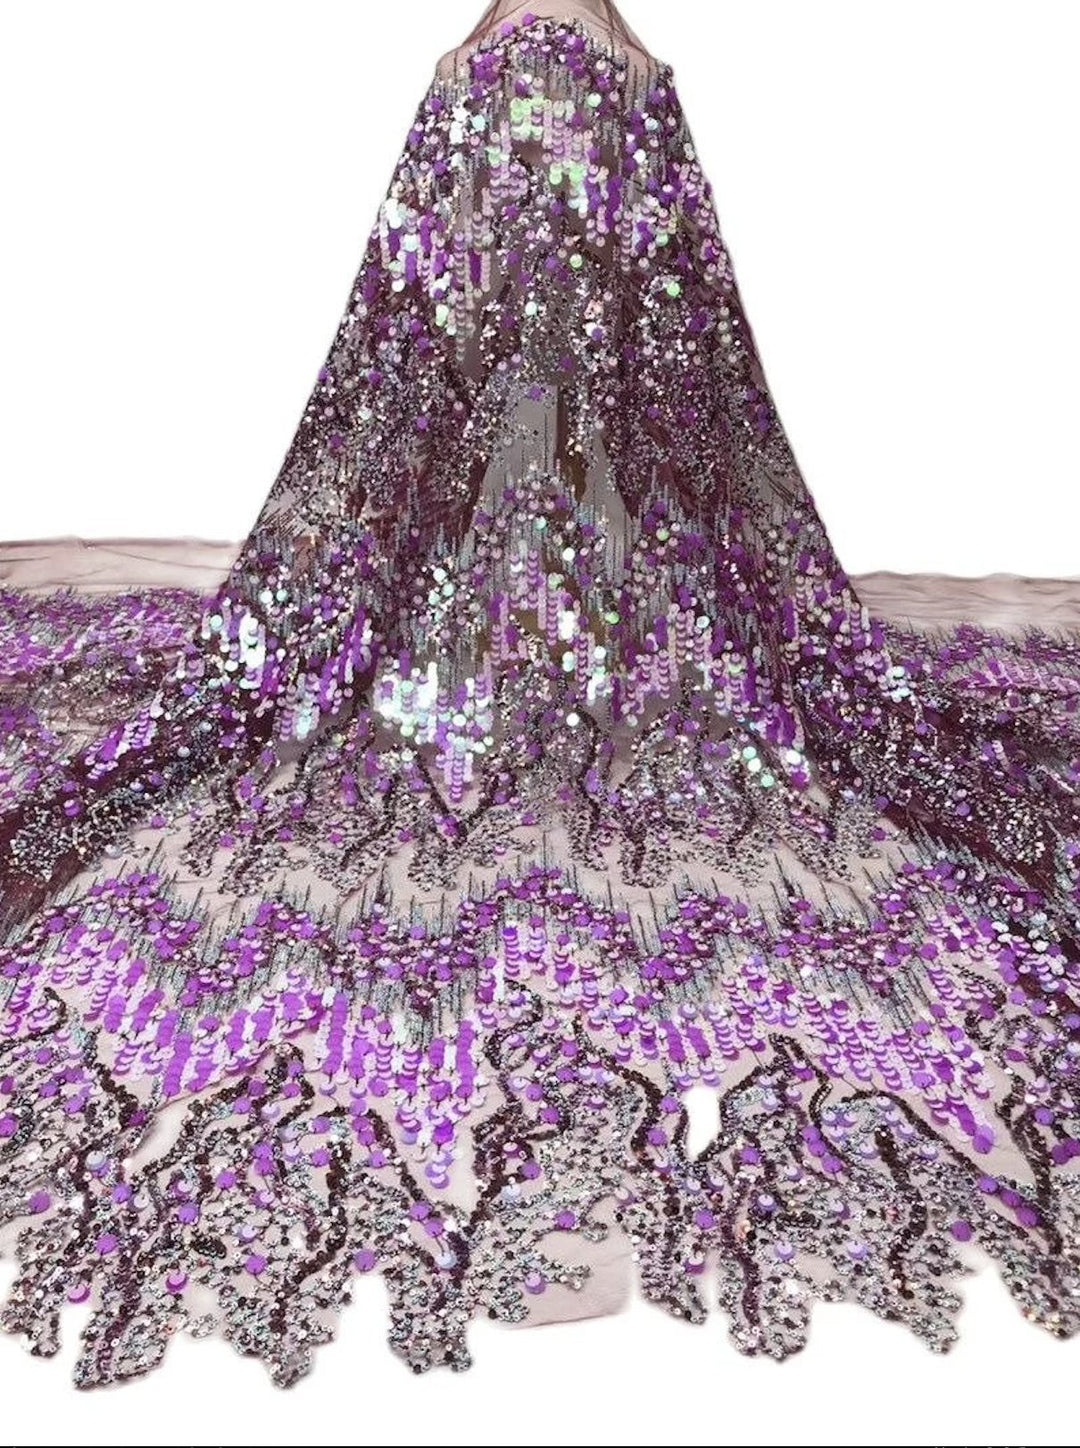 5 YARDS / 6 COLORI / Cosette Wave Design Paillettes Perline Glitter Ricamo Maglia di pizzo / Tessuto per abito da sposa per ballo di fine anno